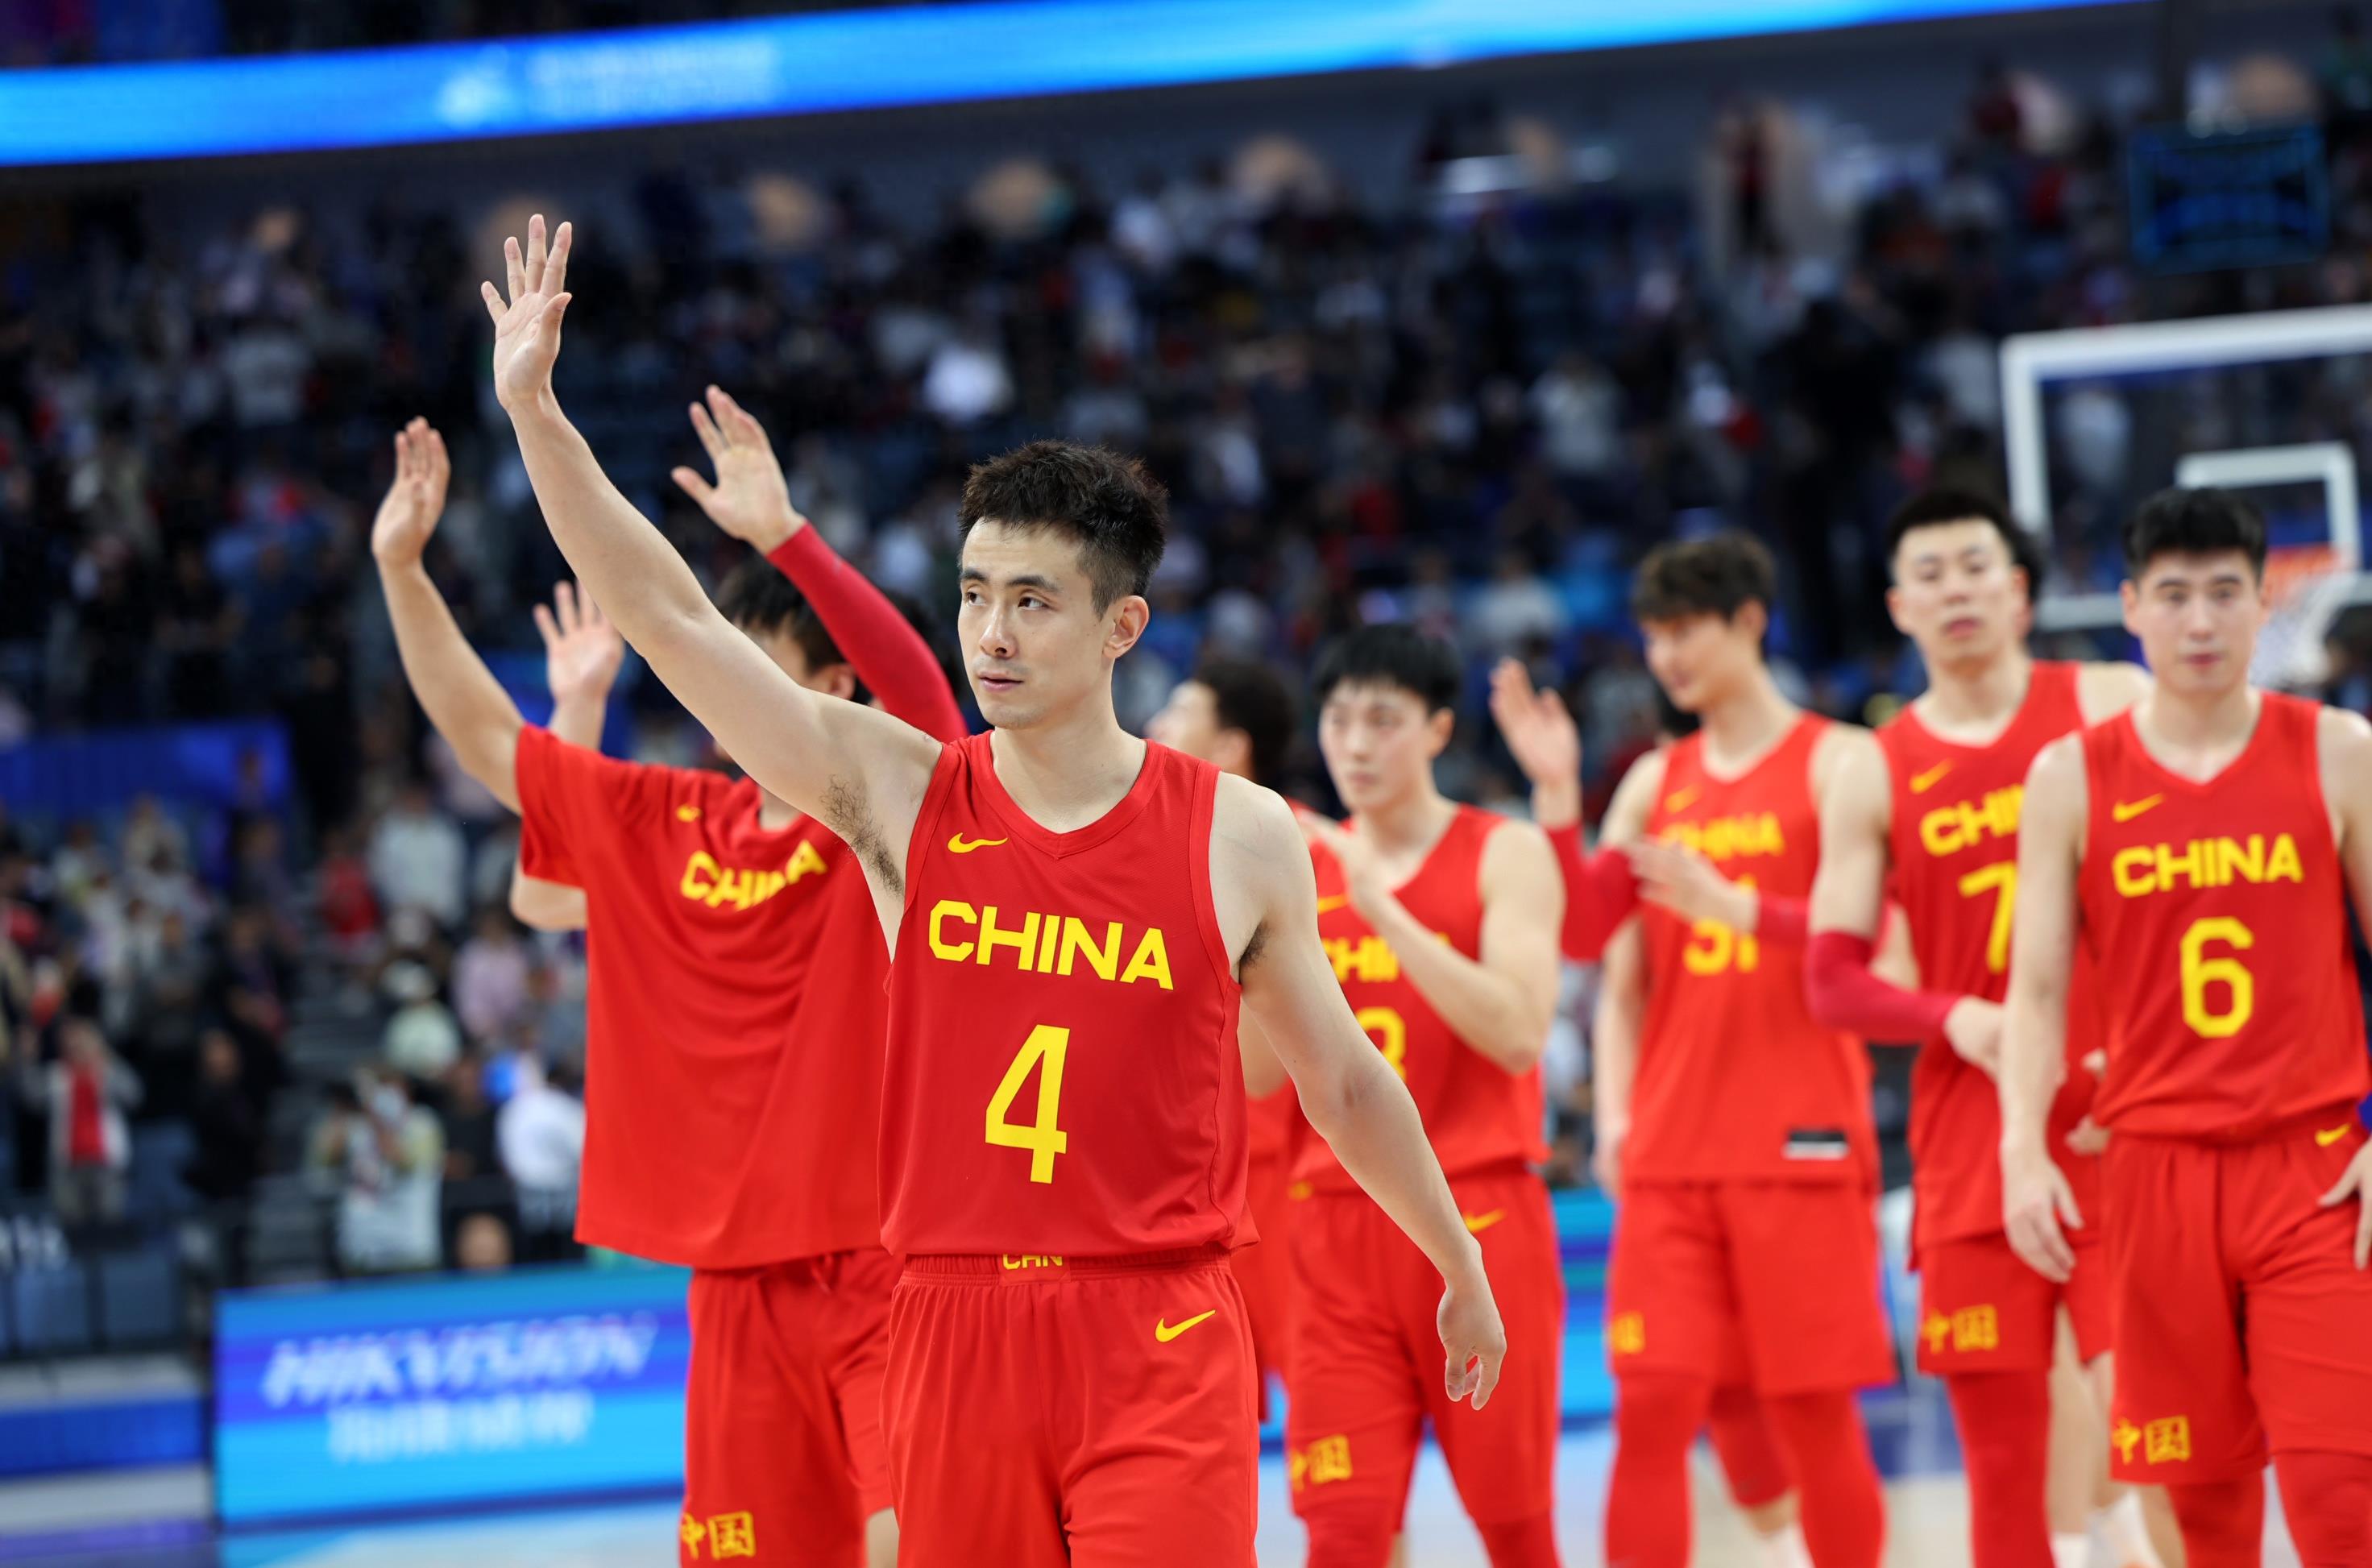 杭州亚运会 | 菲律宾队夺得男篮冠军  中国男篮获铜牌